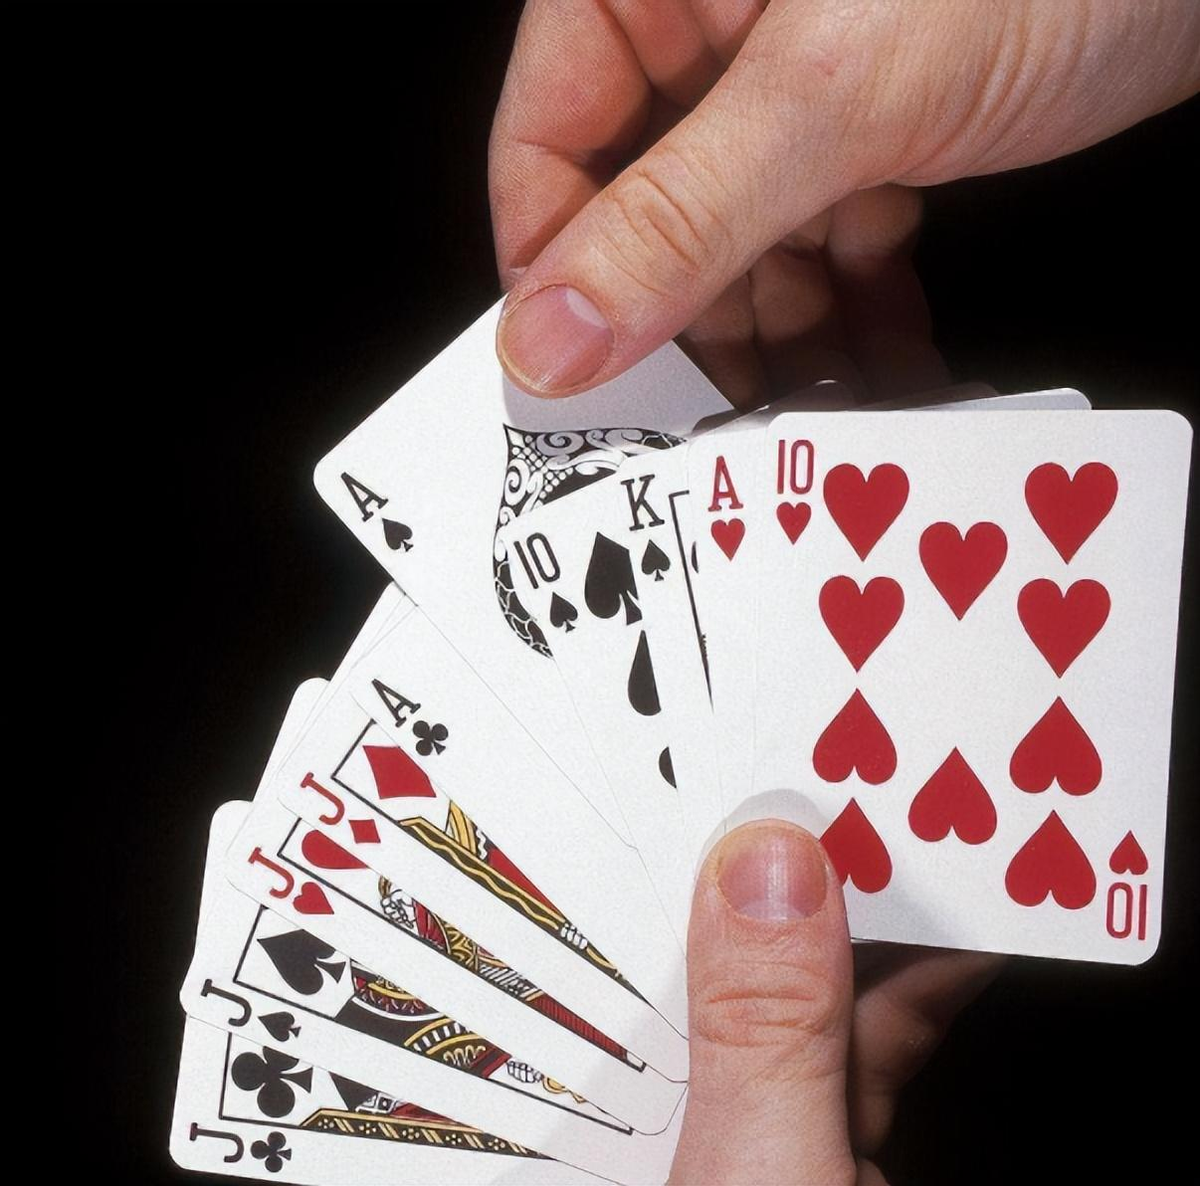 打了这么久的扑克牌,牌上的12个人都是谁?他们为何会出现在牌上